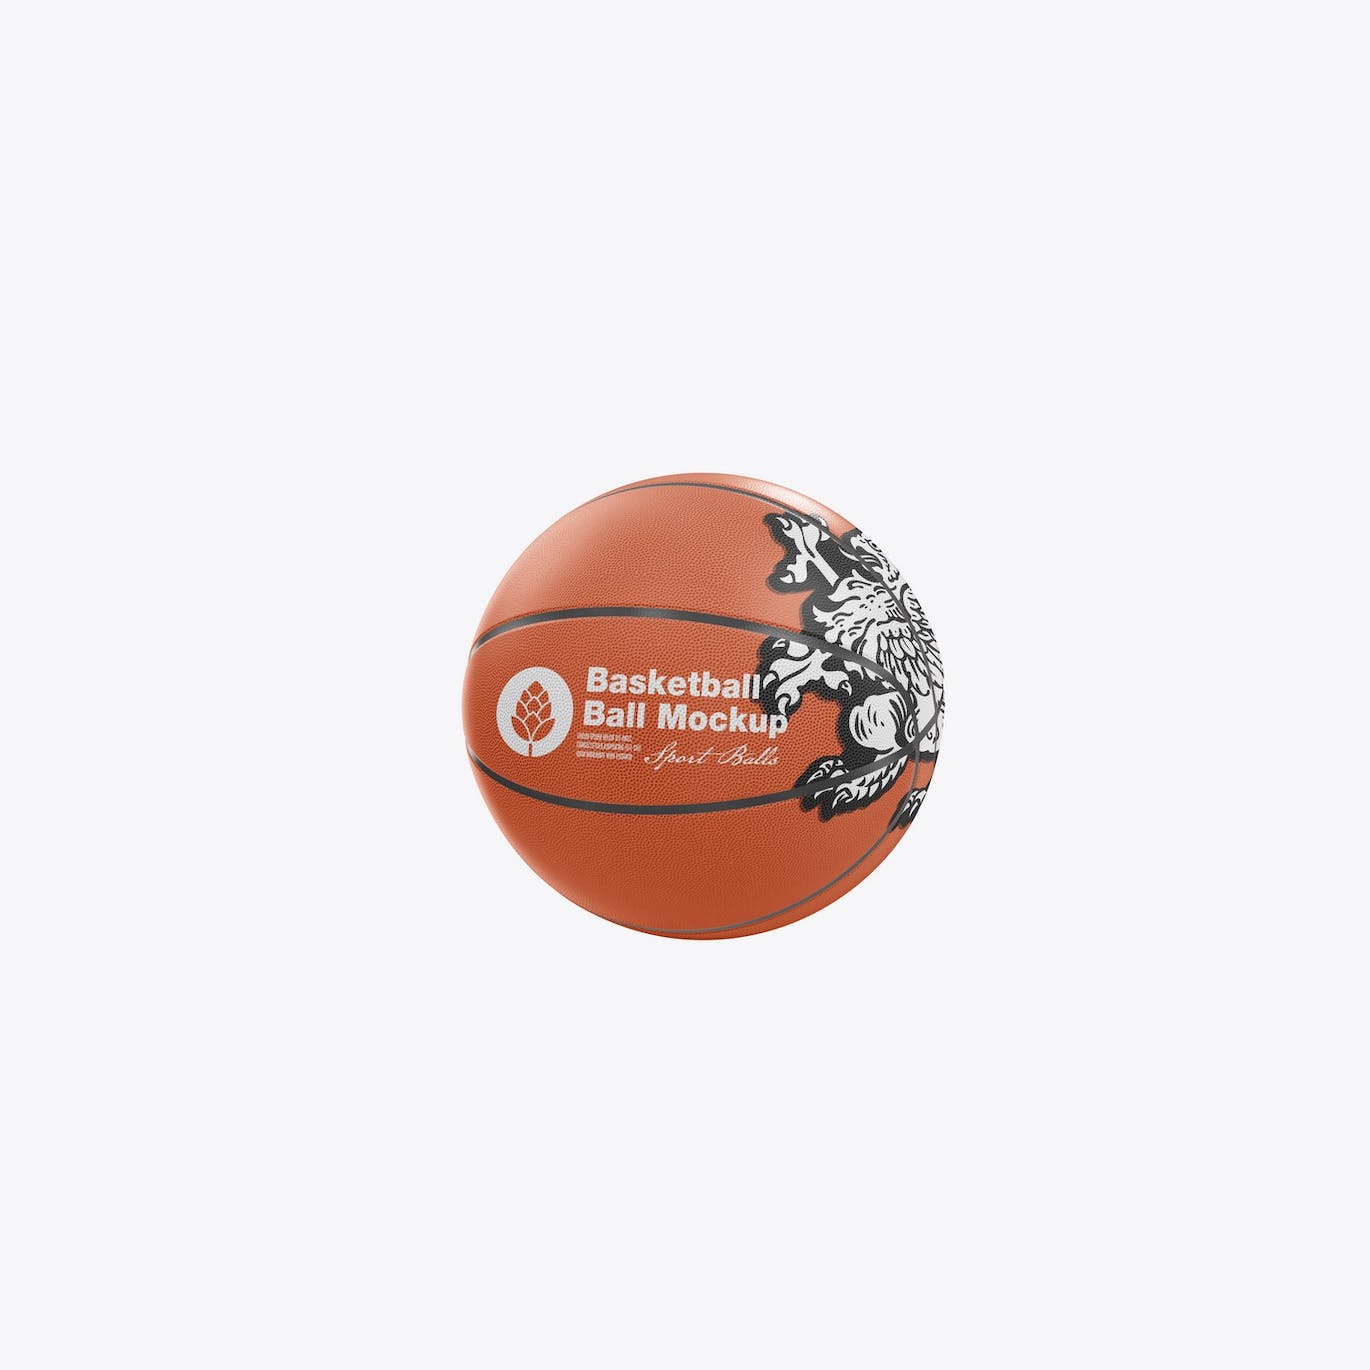 篮球运动品牌展示样机模板 Basketball Ball Mockup 样机素材 第2张